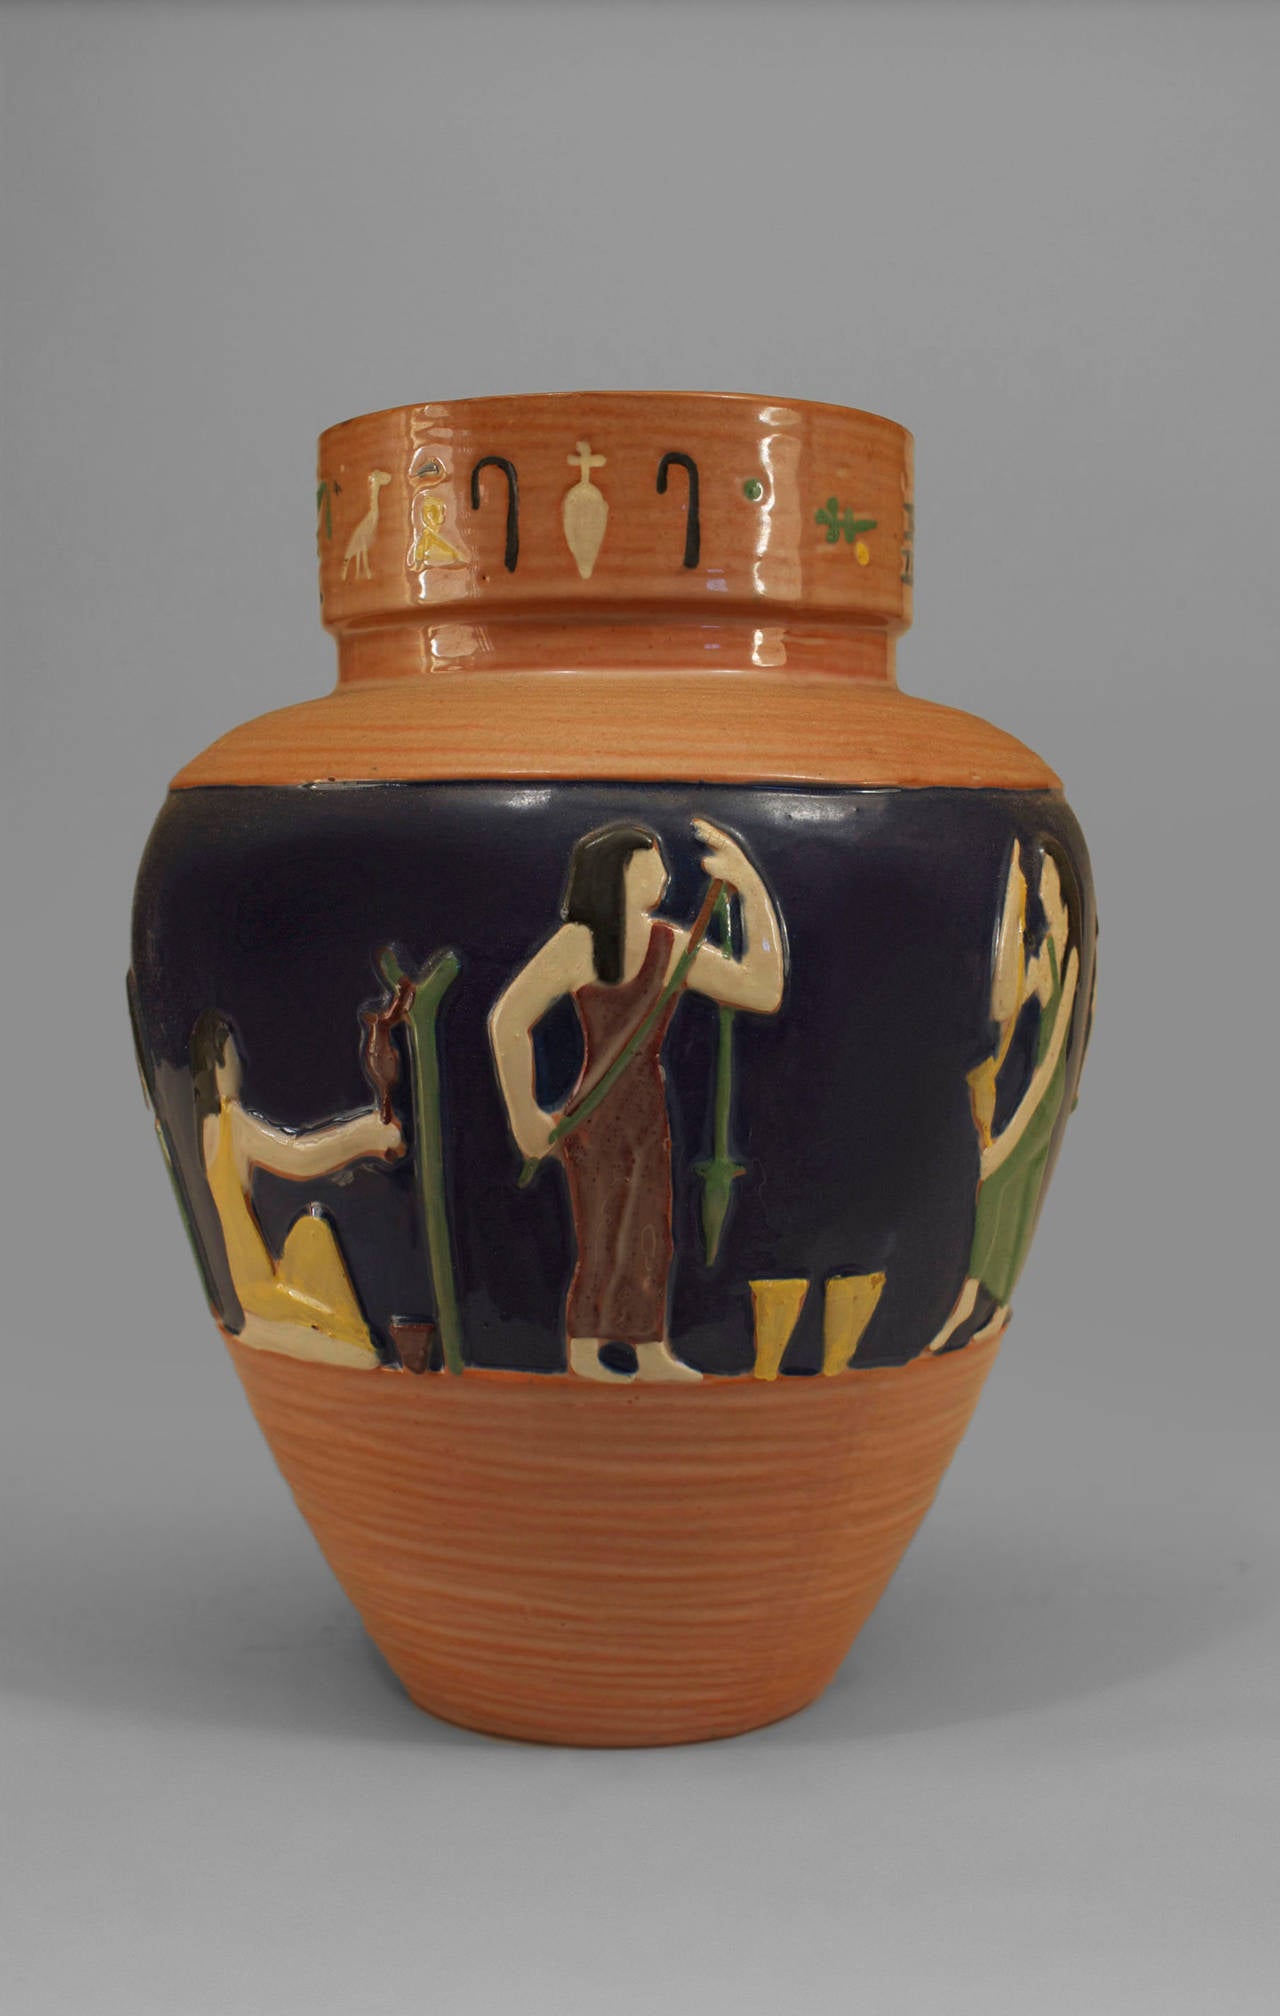 Moyen Orient Style égyptien (1er trim. 20e s. - Tchèque) petit vase bleu et beige avec figure et motifs classiques émaillés.
